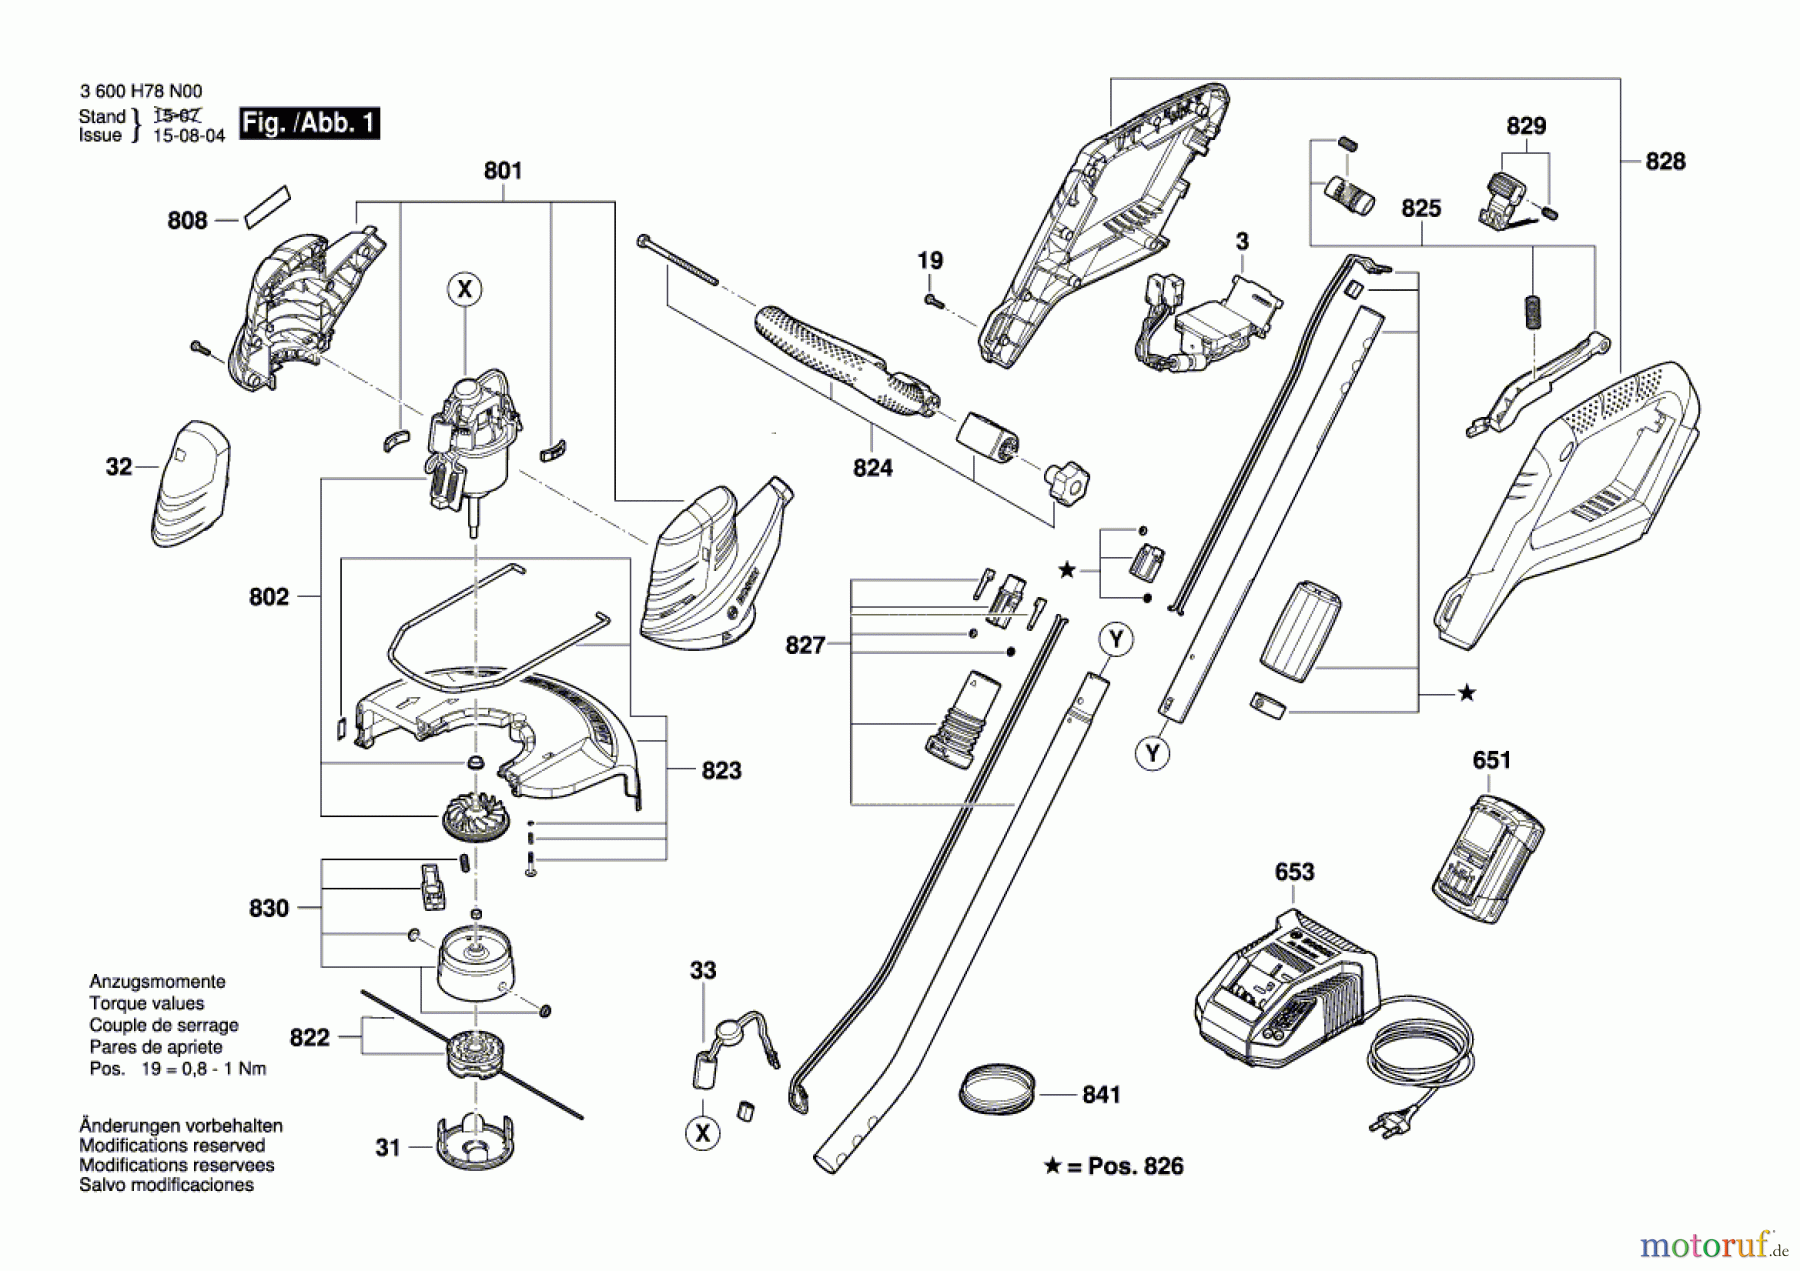  Bosch Werkzeug Elektro-Sichel ART 30-36 LI Seite 1